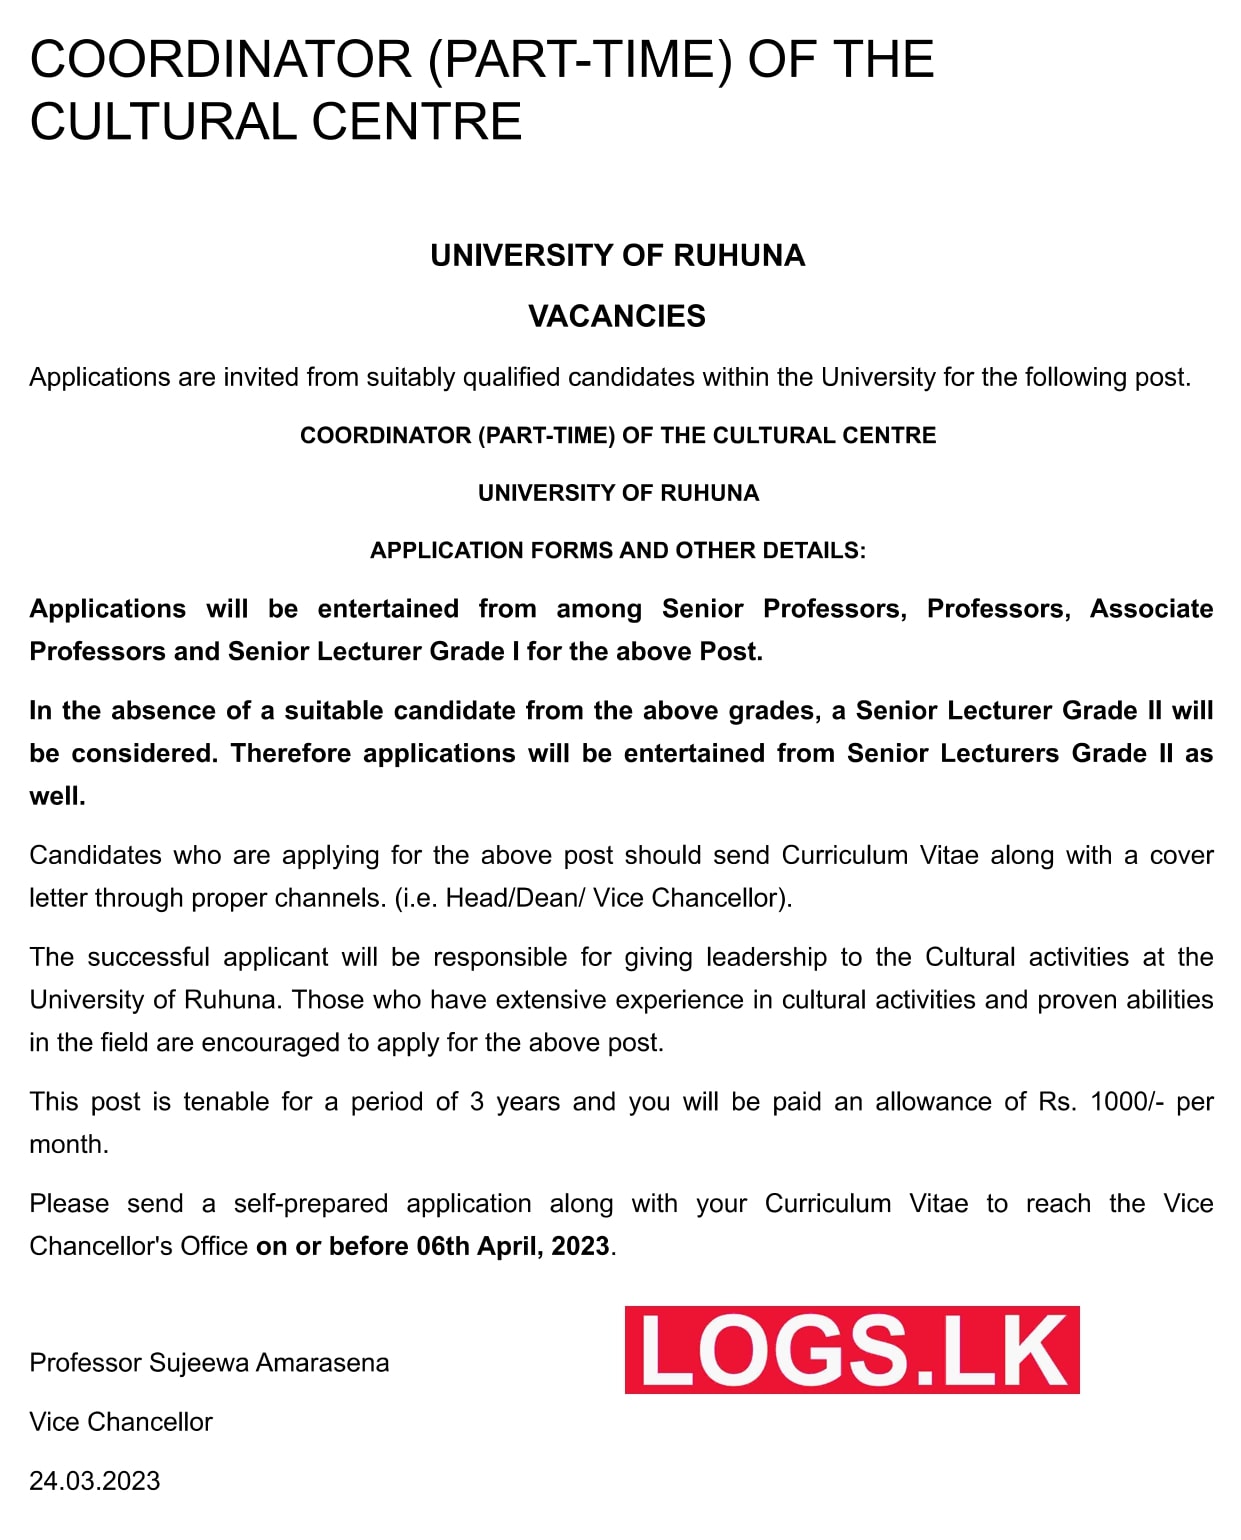 Coordinator - University of Ruhuna Vacancies 2023 Application, Details Download